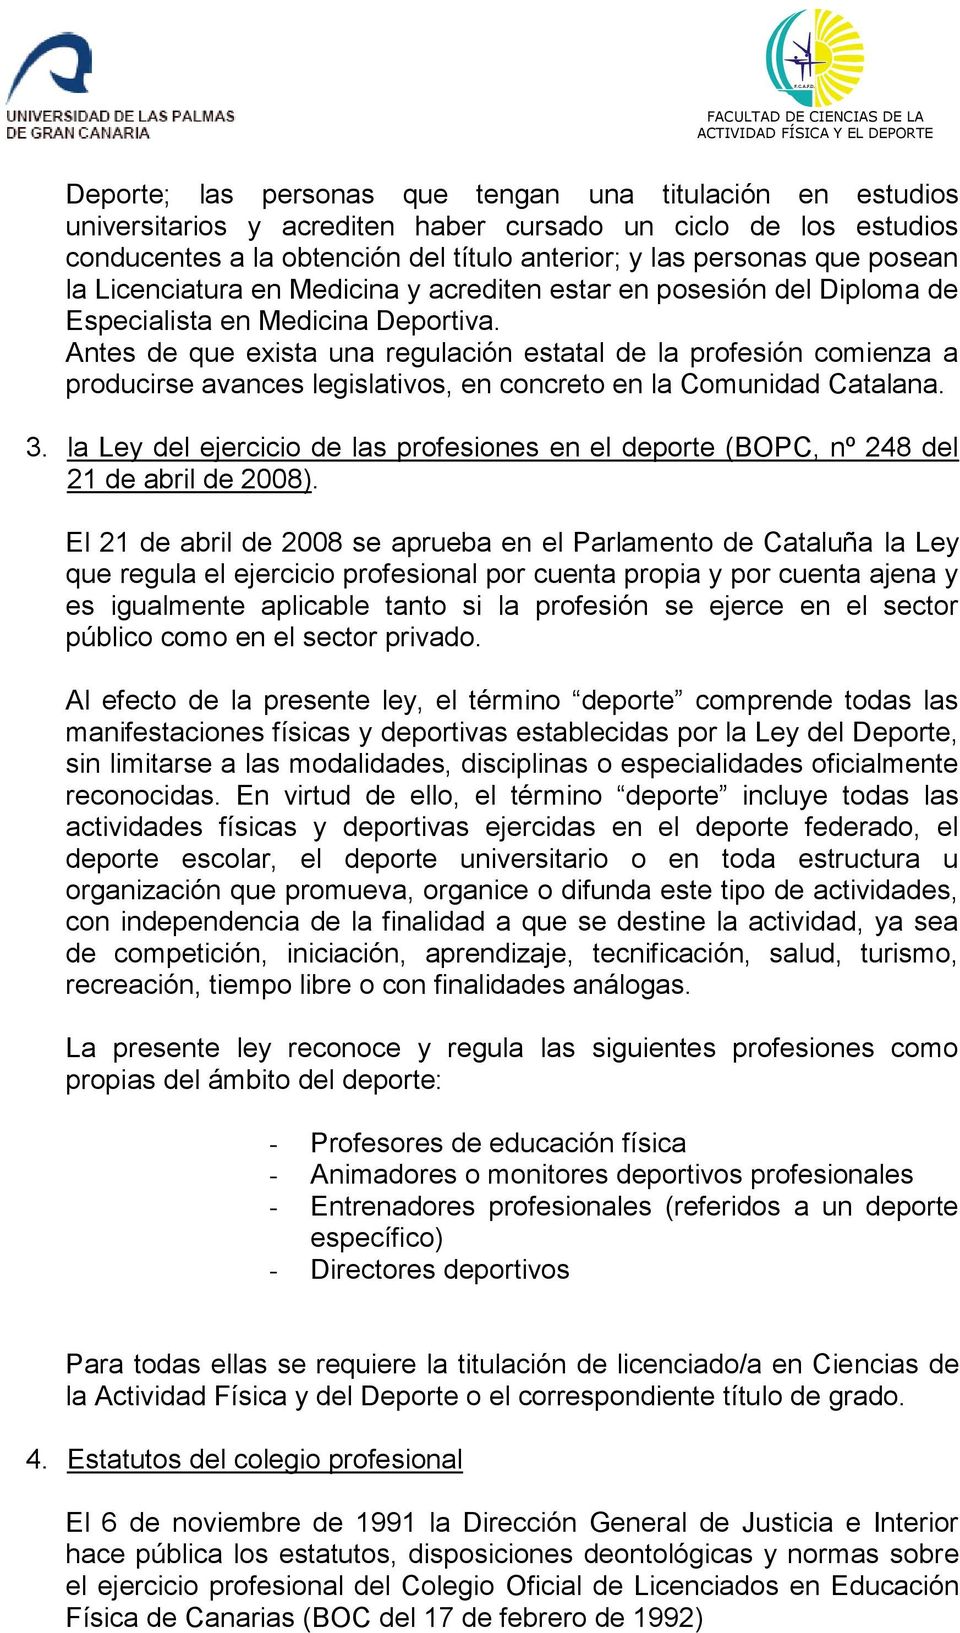 Antes de que exista una regulación estatal de la profesión comienza a producirse avances legislativos, en concreto en la Comunidad Catalana. 3.